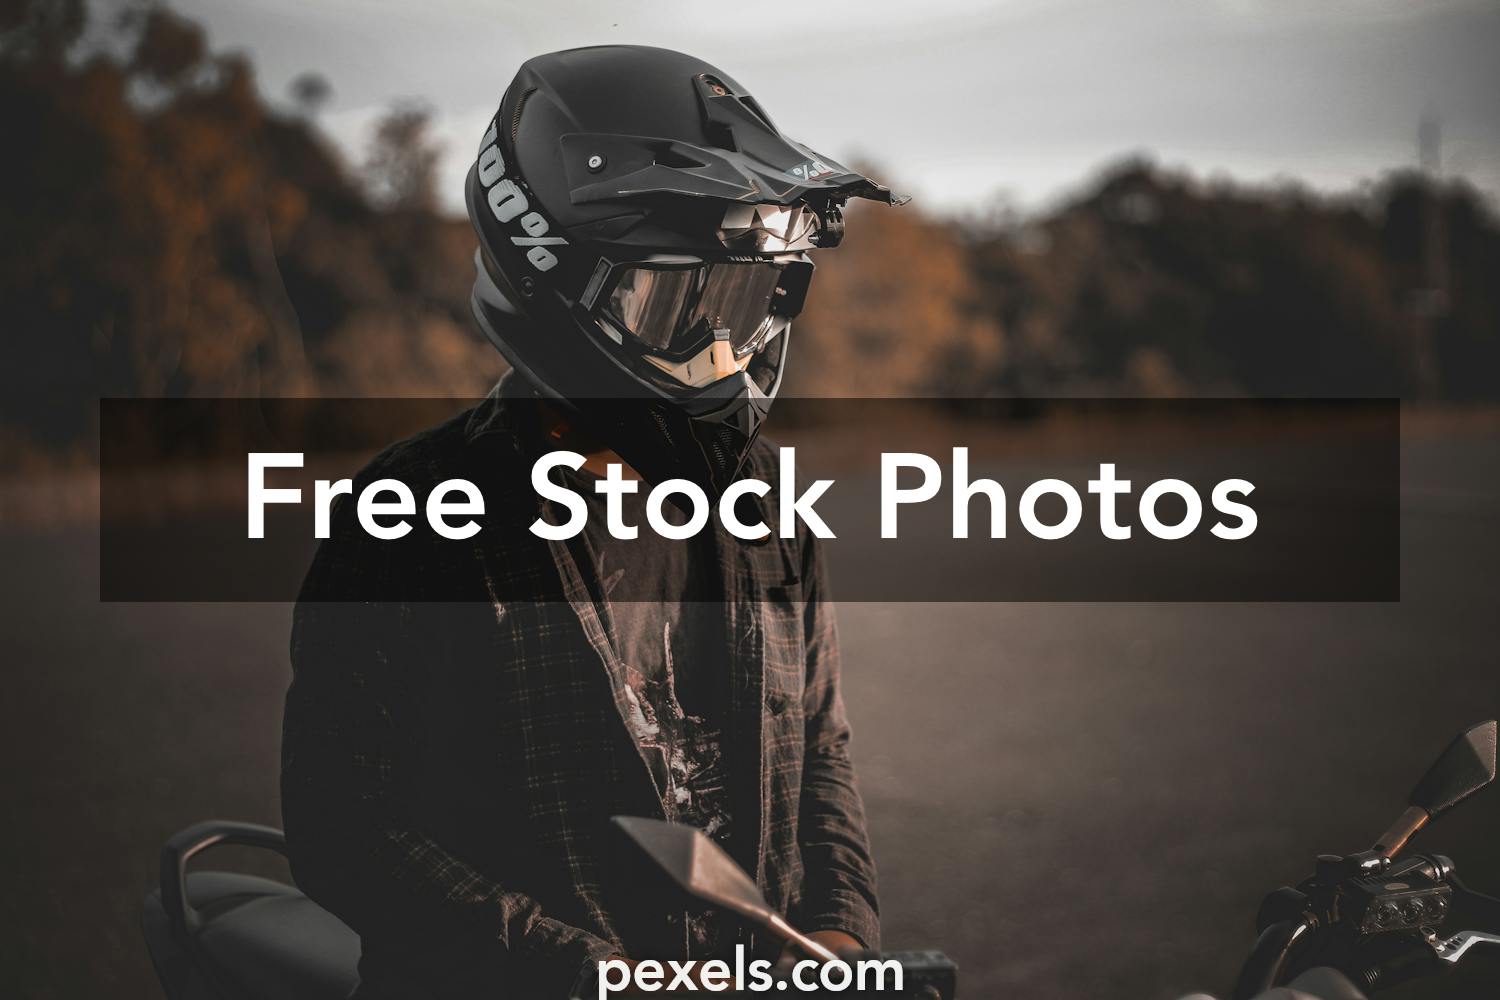 1000 Great Bike Rider Photos Pexels Free Stock Photos Images, Photos, Reviews